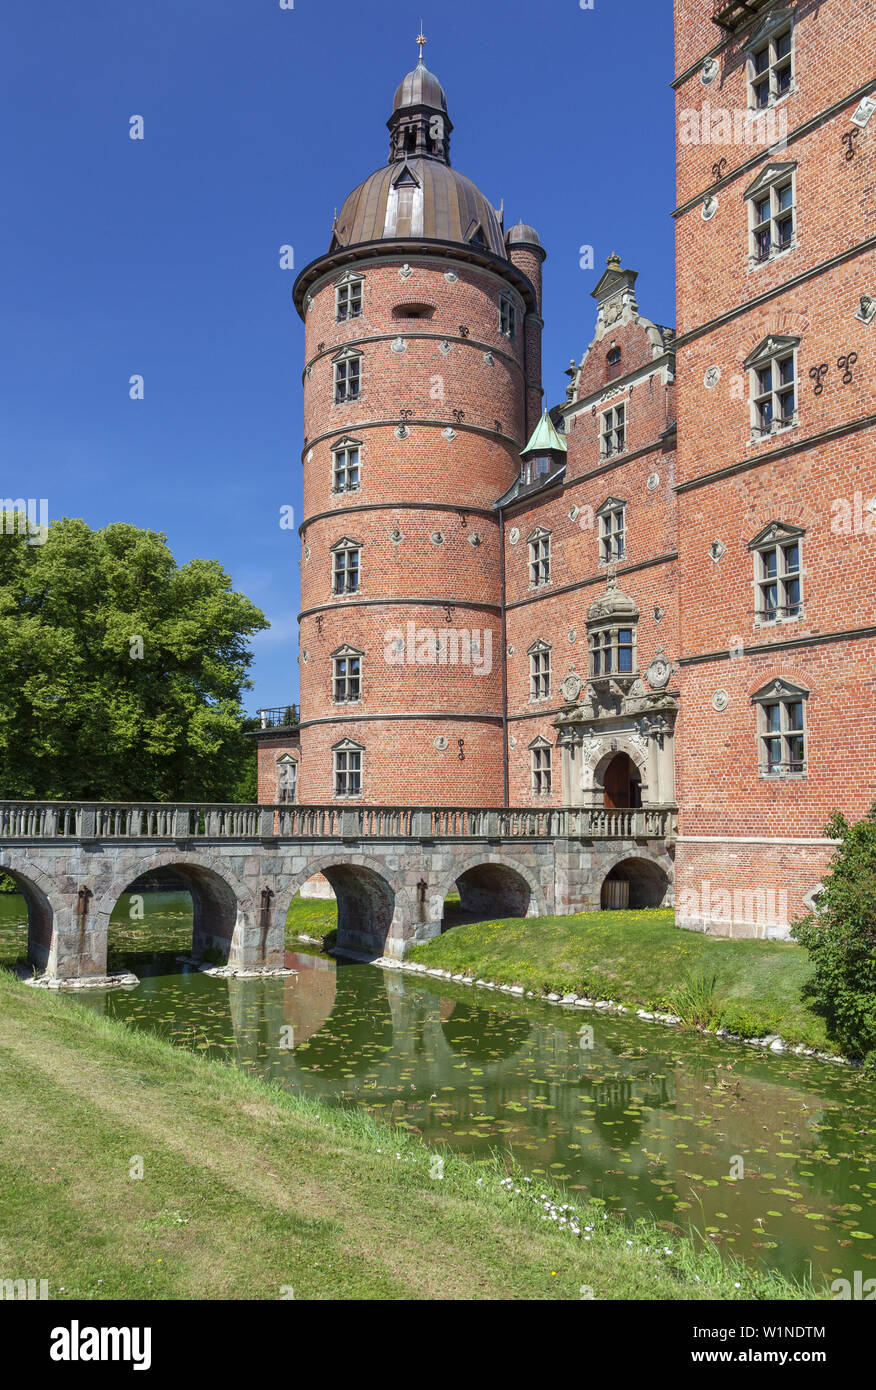 Schloss Gjorslev Slot, Stevns Halbinsel, Insel von Neuseeland, Skandinavien, Dänemark, Nordeuropa Stockfoto